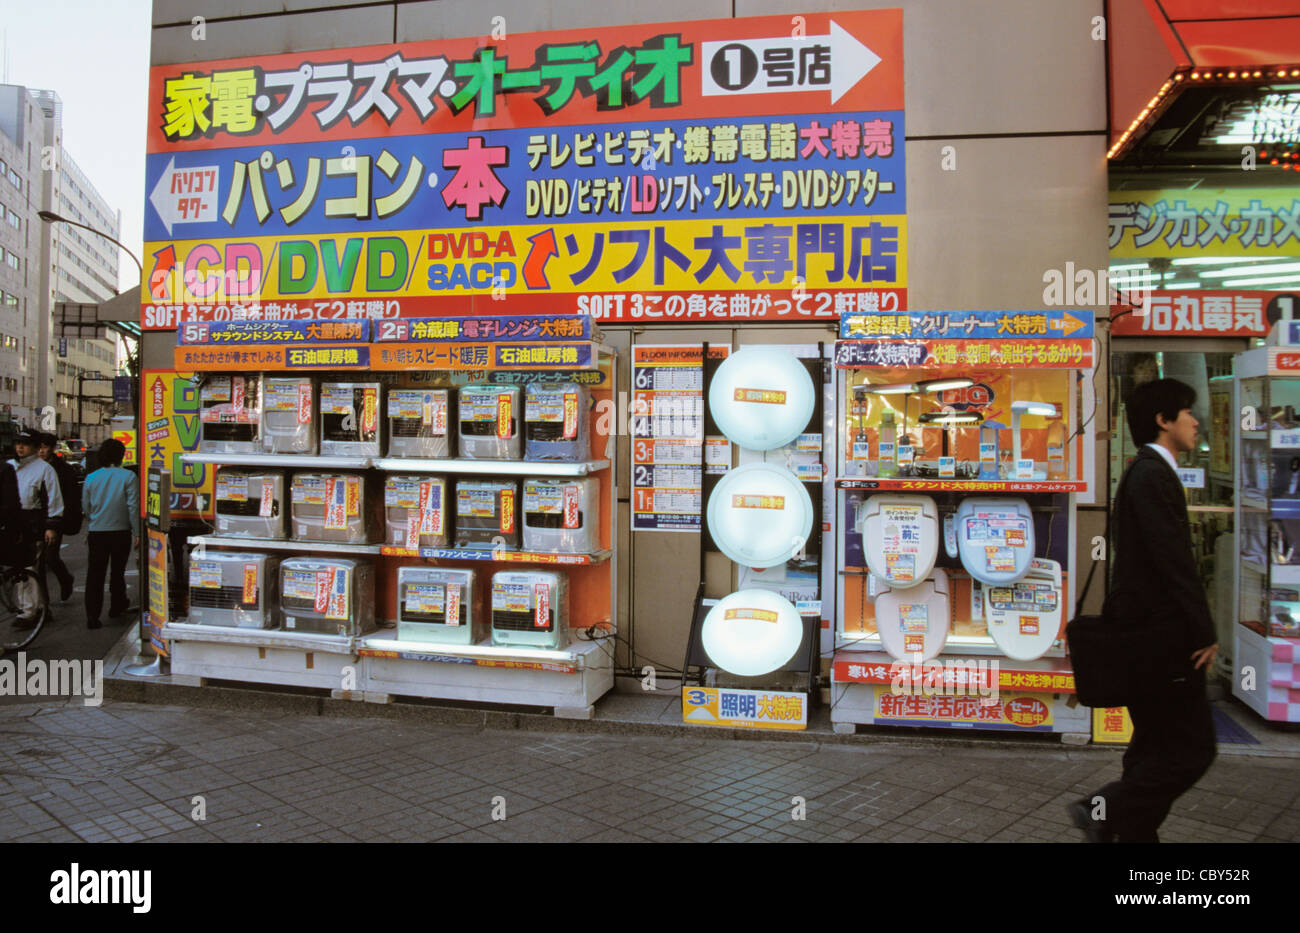 Akihabara Japon Tokyo articles électriques des ménages sur l'affichage à l'extérieur de l'atelier I e sièges de toilettes chauffées etc Banque D'Images